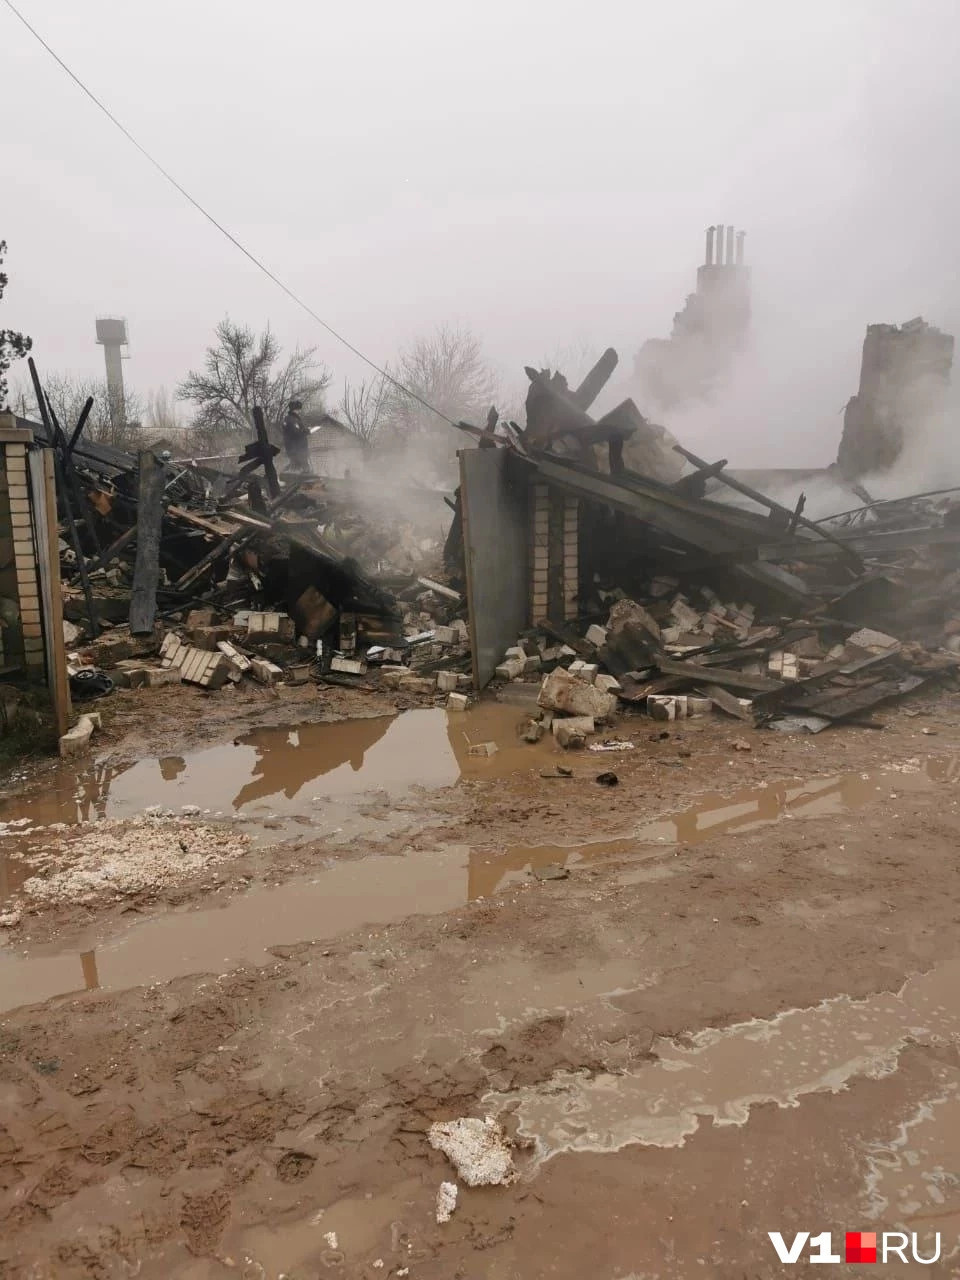 Новое ЧП из-за газа, теперь под Волгоградом — на видео взрыв и мощный пожар. Под обломками дома погибла девочка